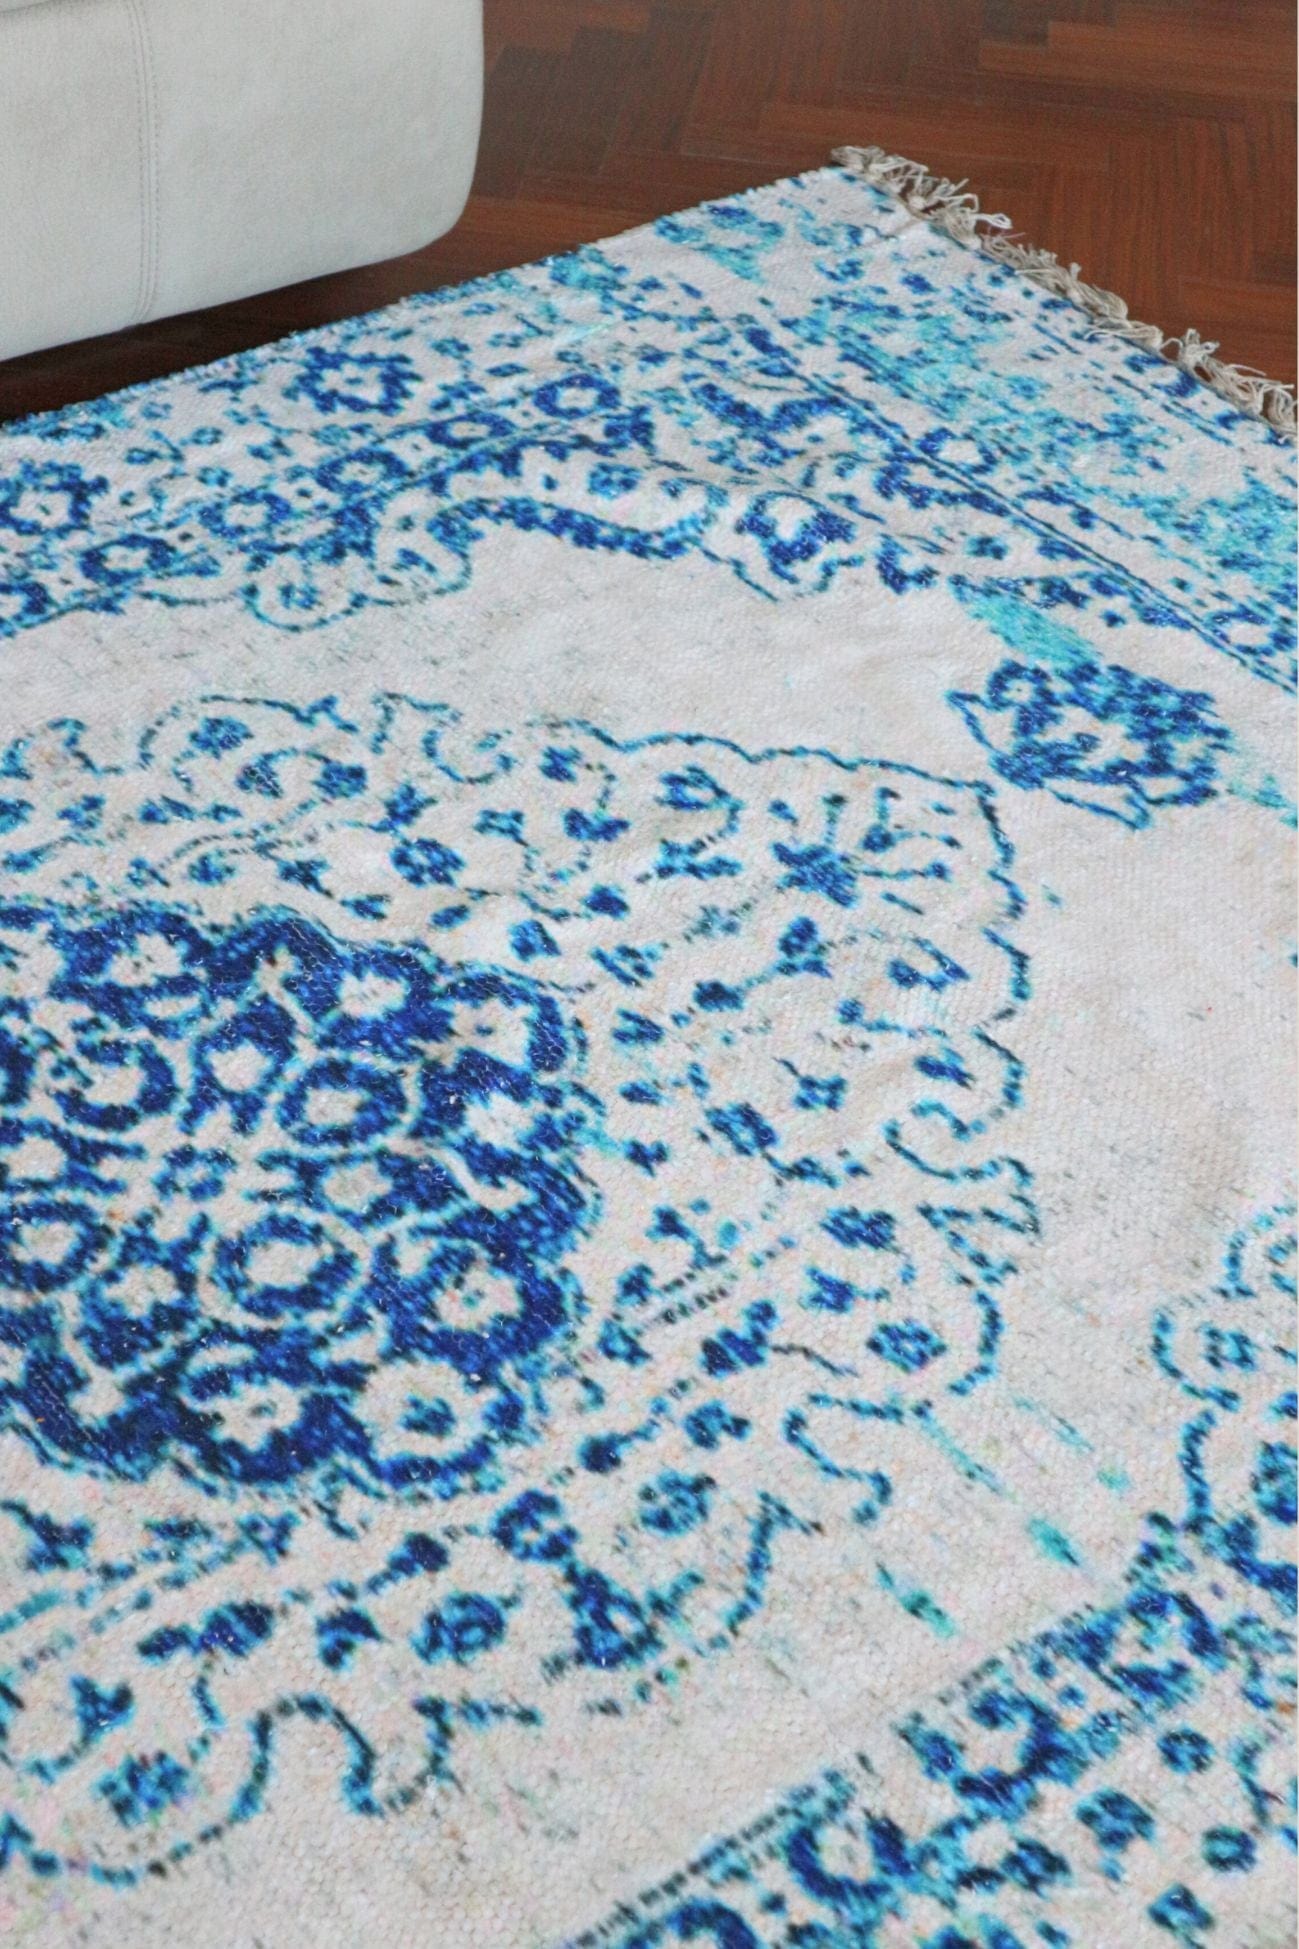 Item International Zariel Zariel - Tappeto in ciniglia di cotone azzurro con motivi etnici 120x180 | Item International